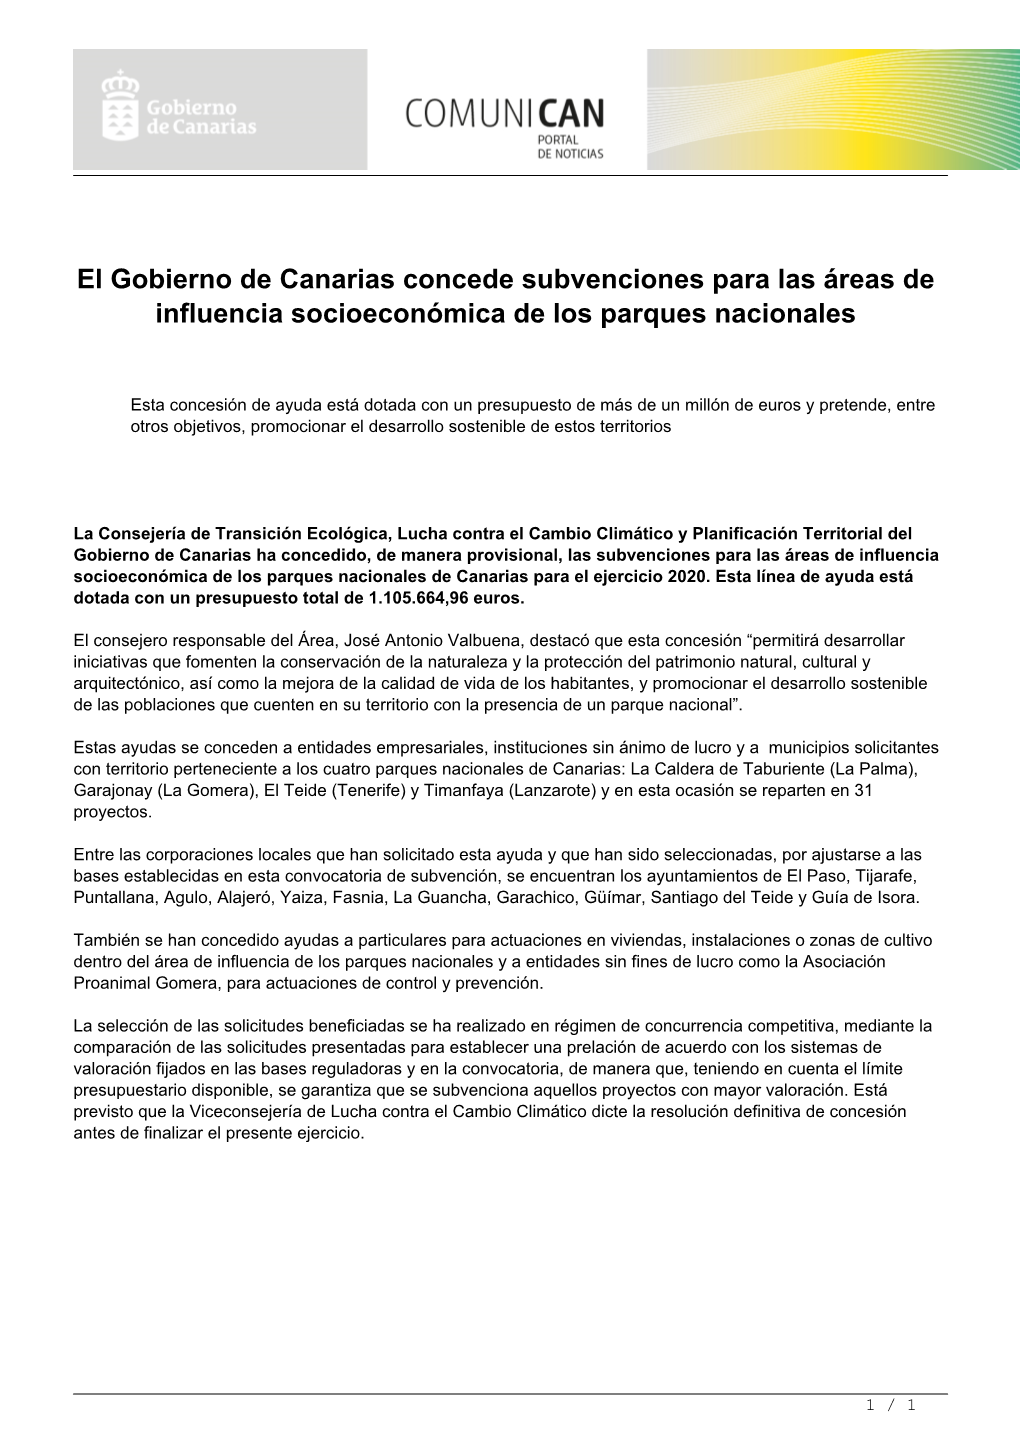 El Gobierno De Canarias Concede Subvenciones Para Las Áreas De Influencia Socioeconómica De Los Parques Nacionales